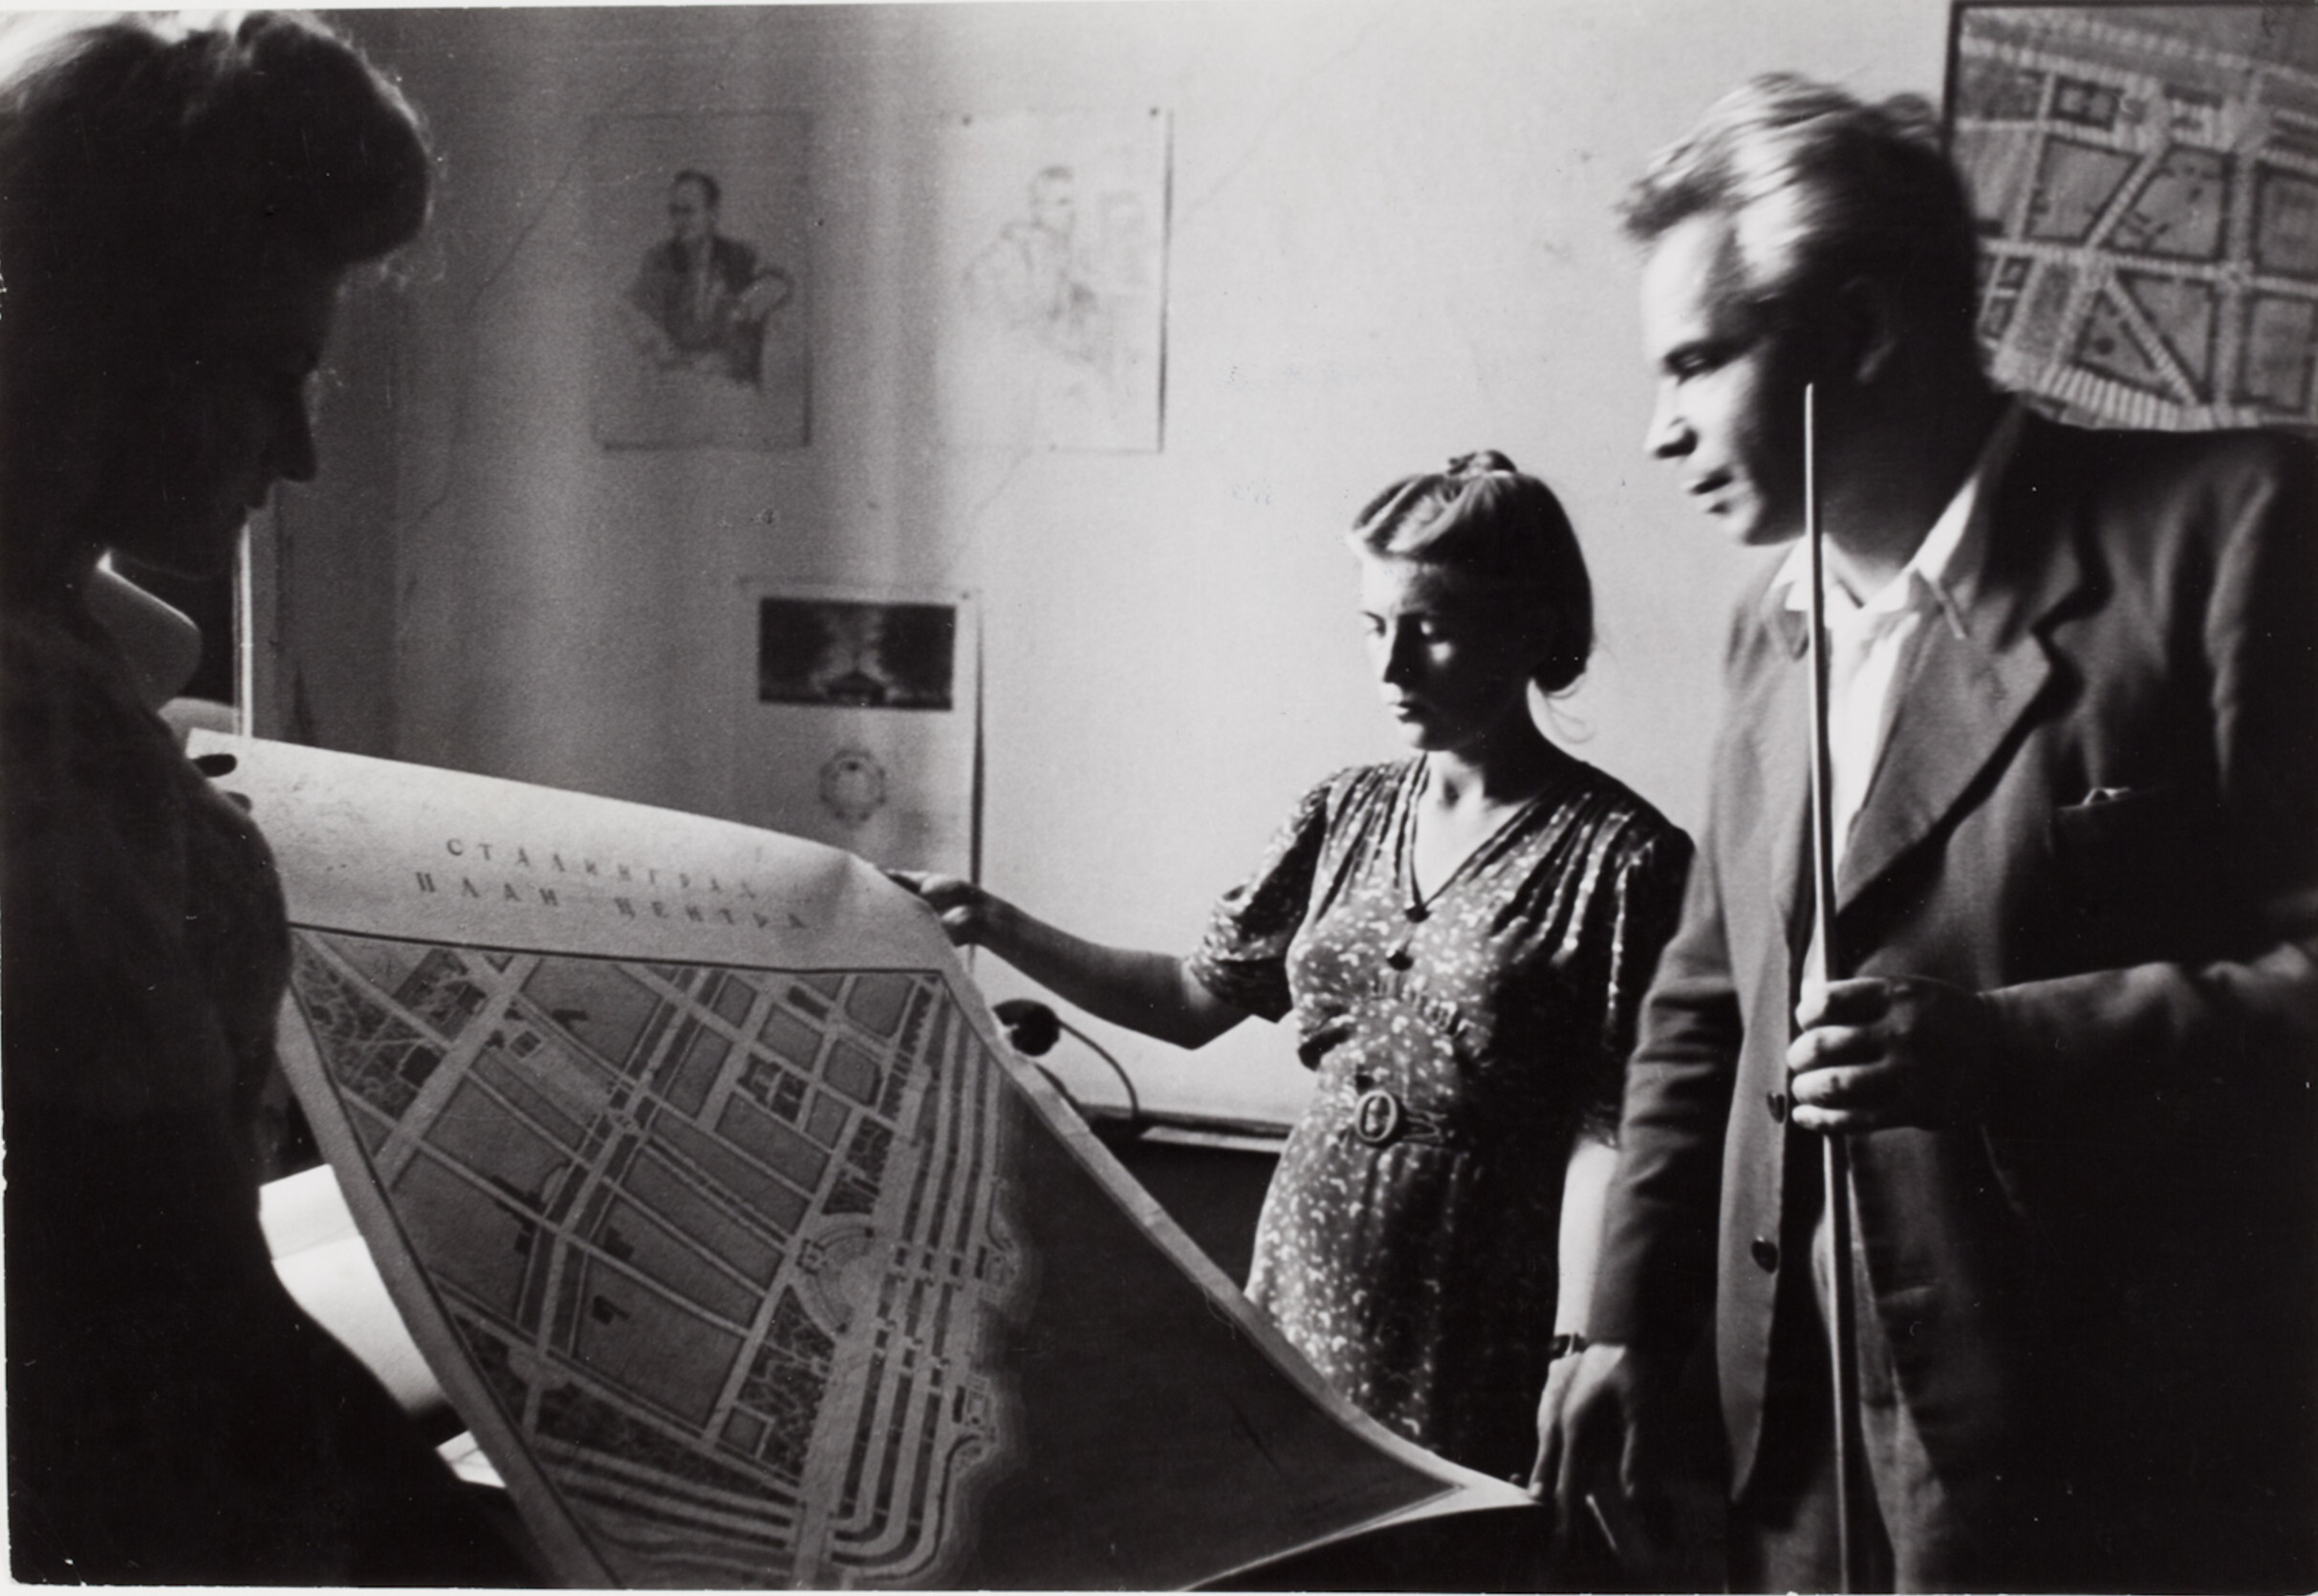 Архитекторы представляют планы восстановления города Киева, 1947 год. Фотограф Роберт Капа